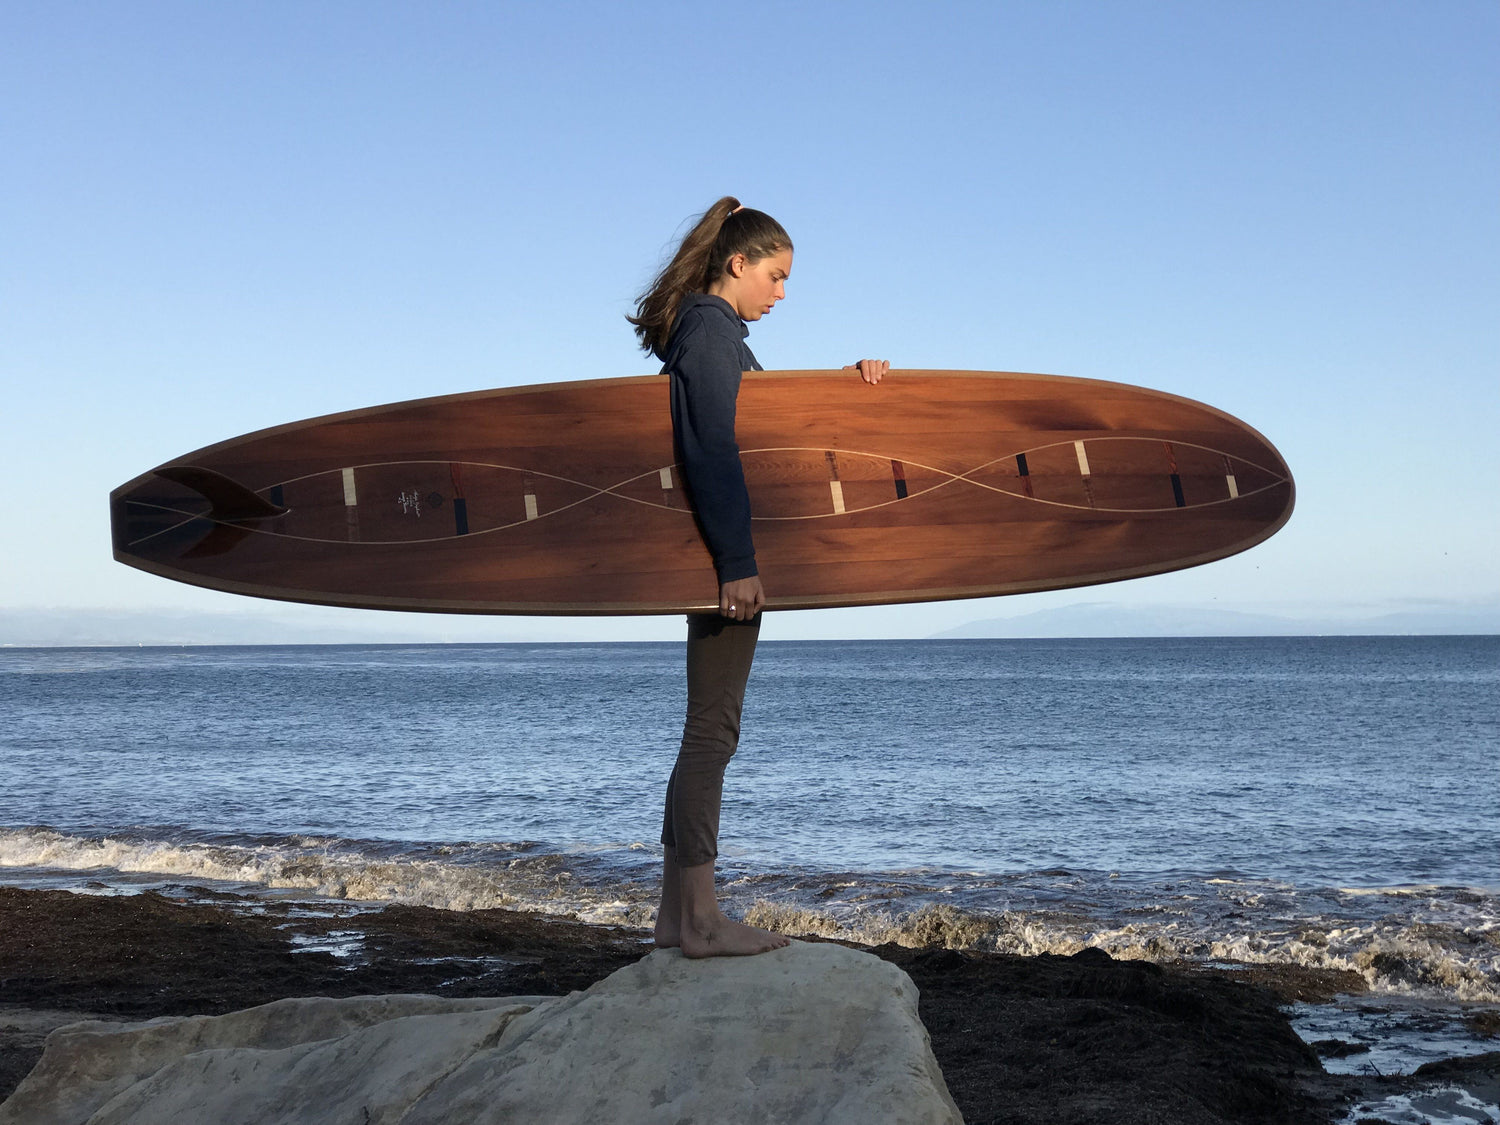 Surfboard - Double Helix Flyer Longboard 9&